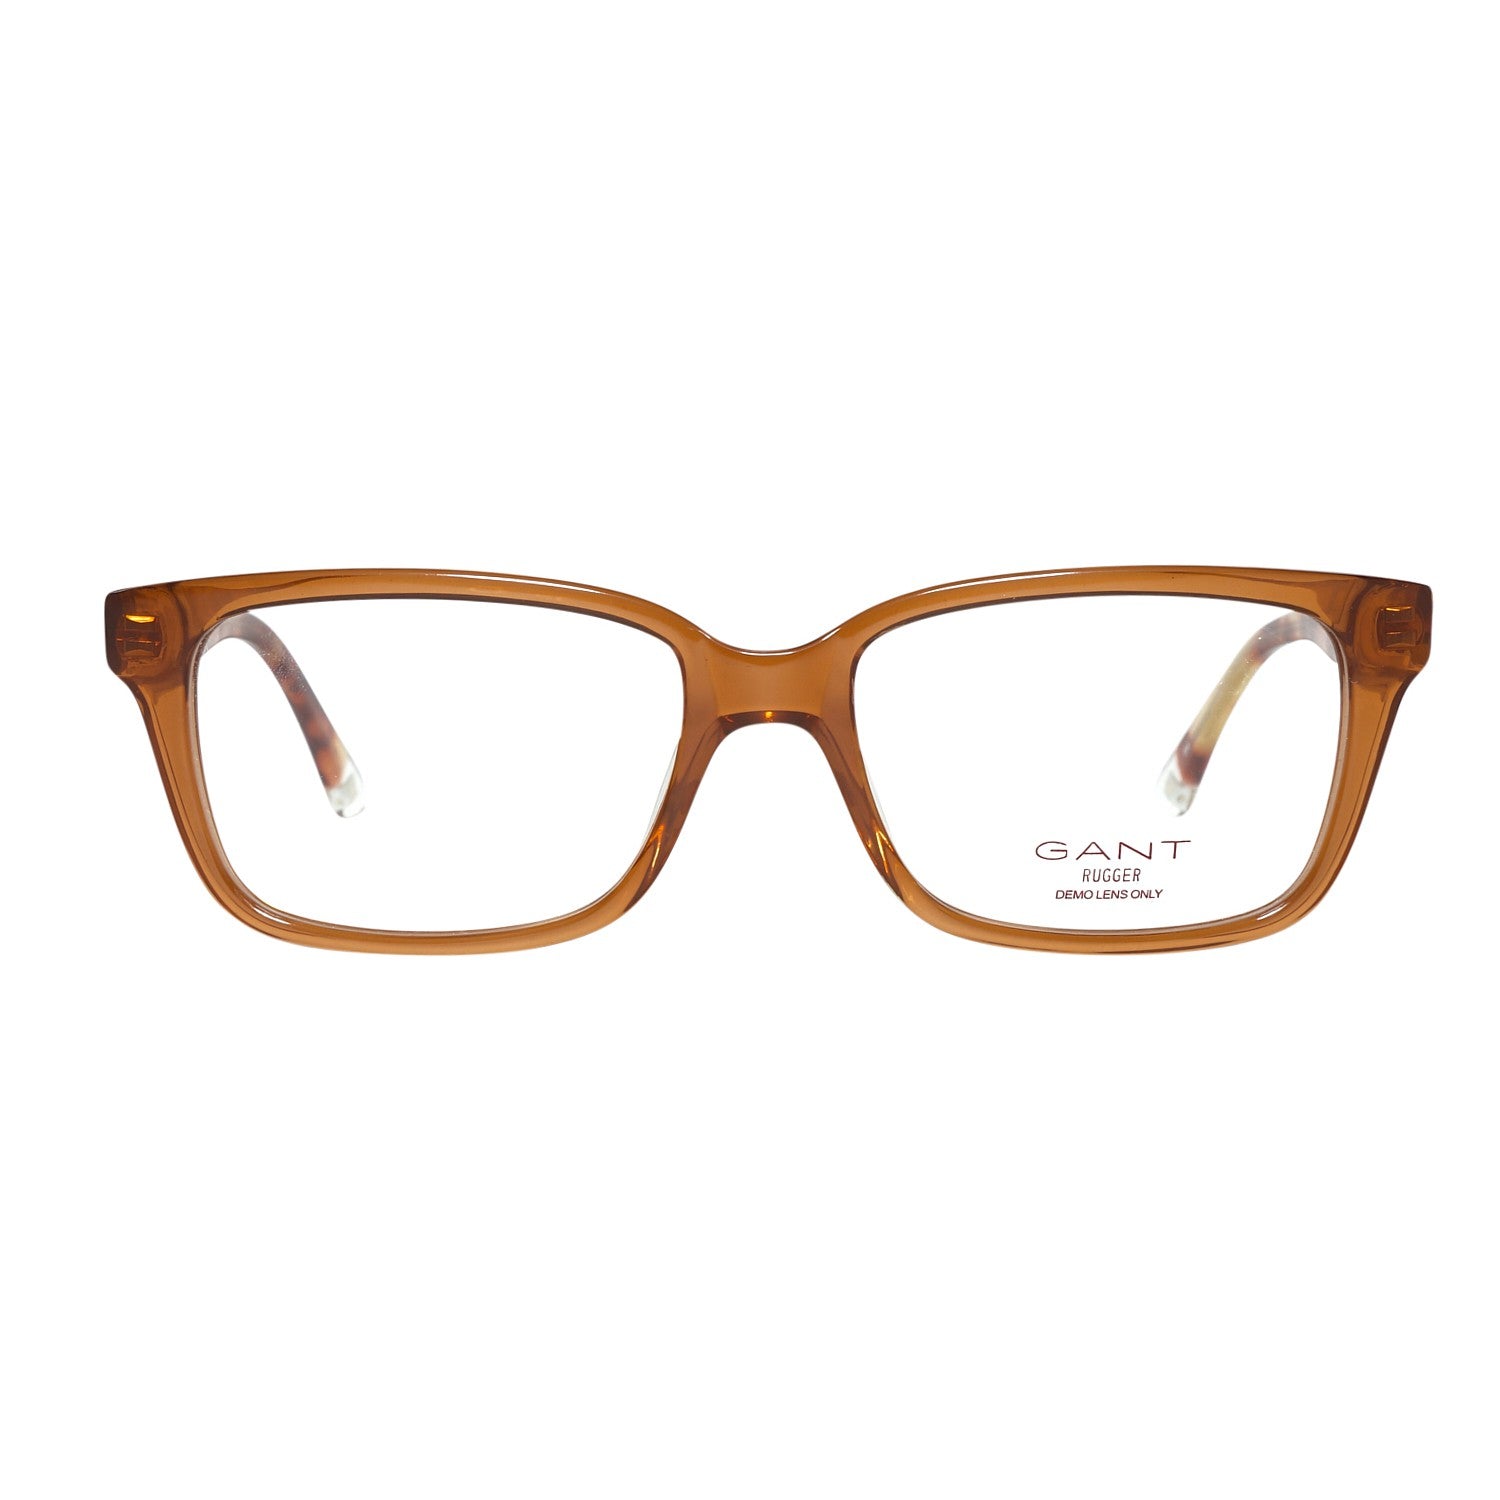 Gant Frames Gant Glasses Frames GRA092 D96 52 | GR YURI BRN 52 Eyeglasses Eyewear UK USA Australia 